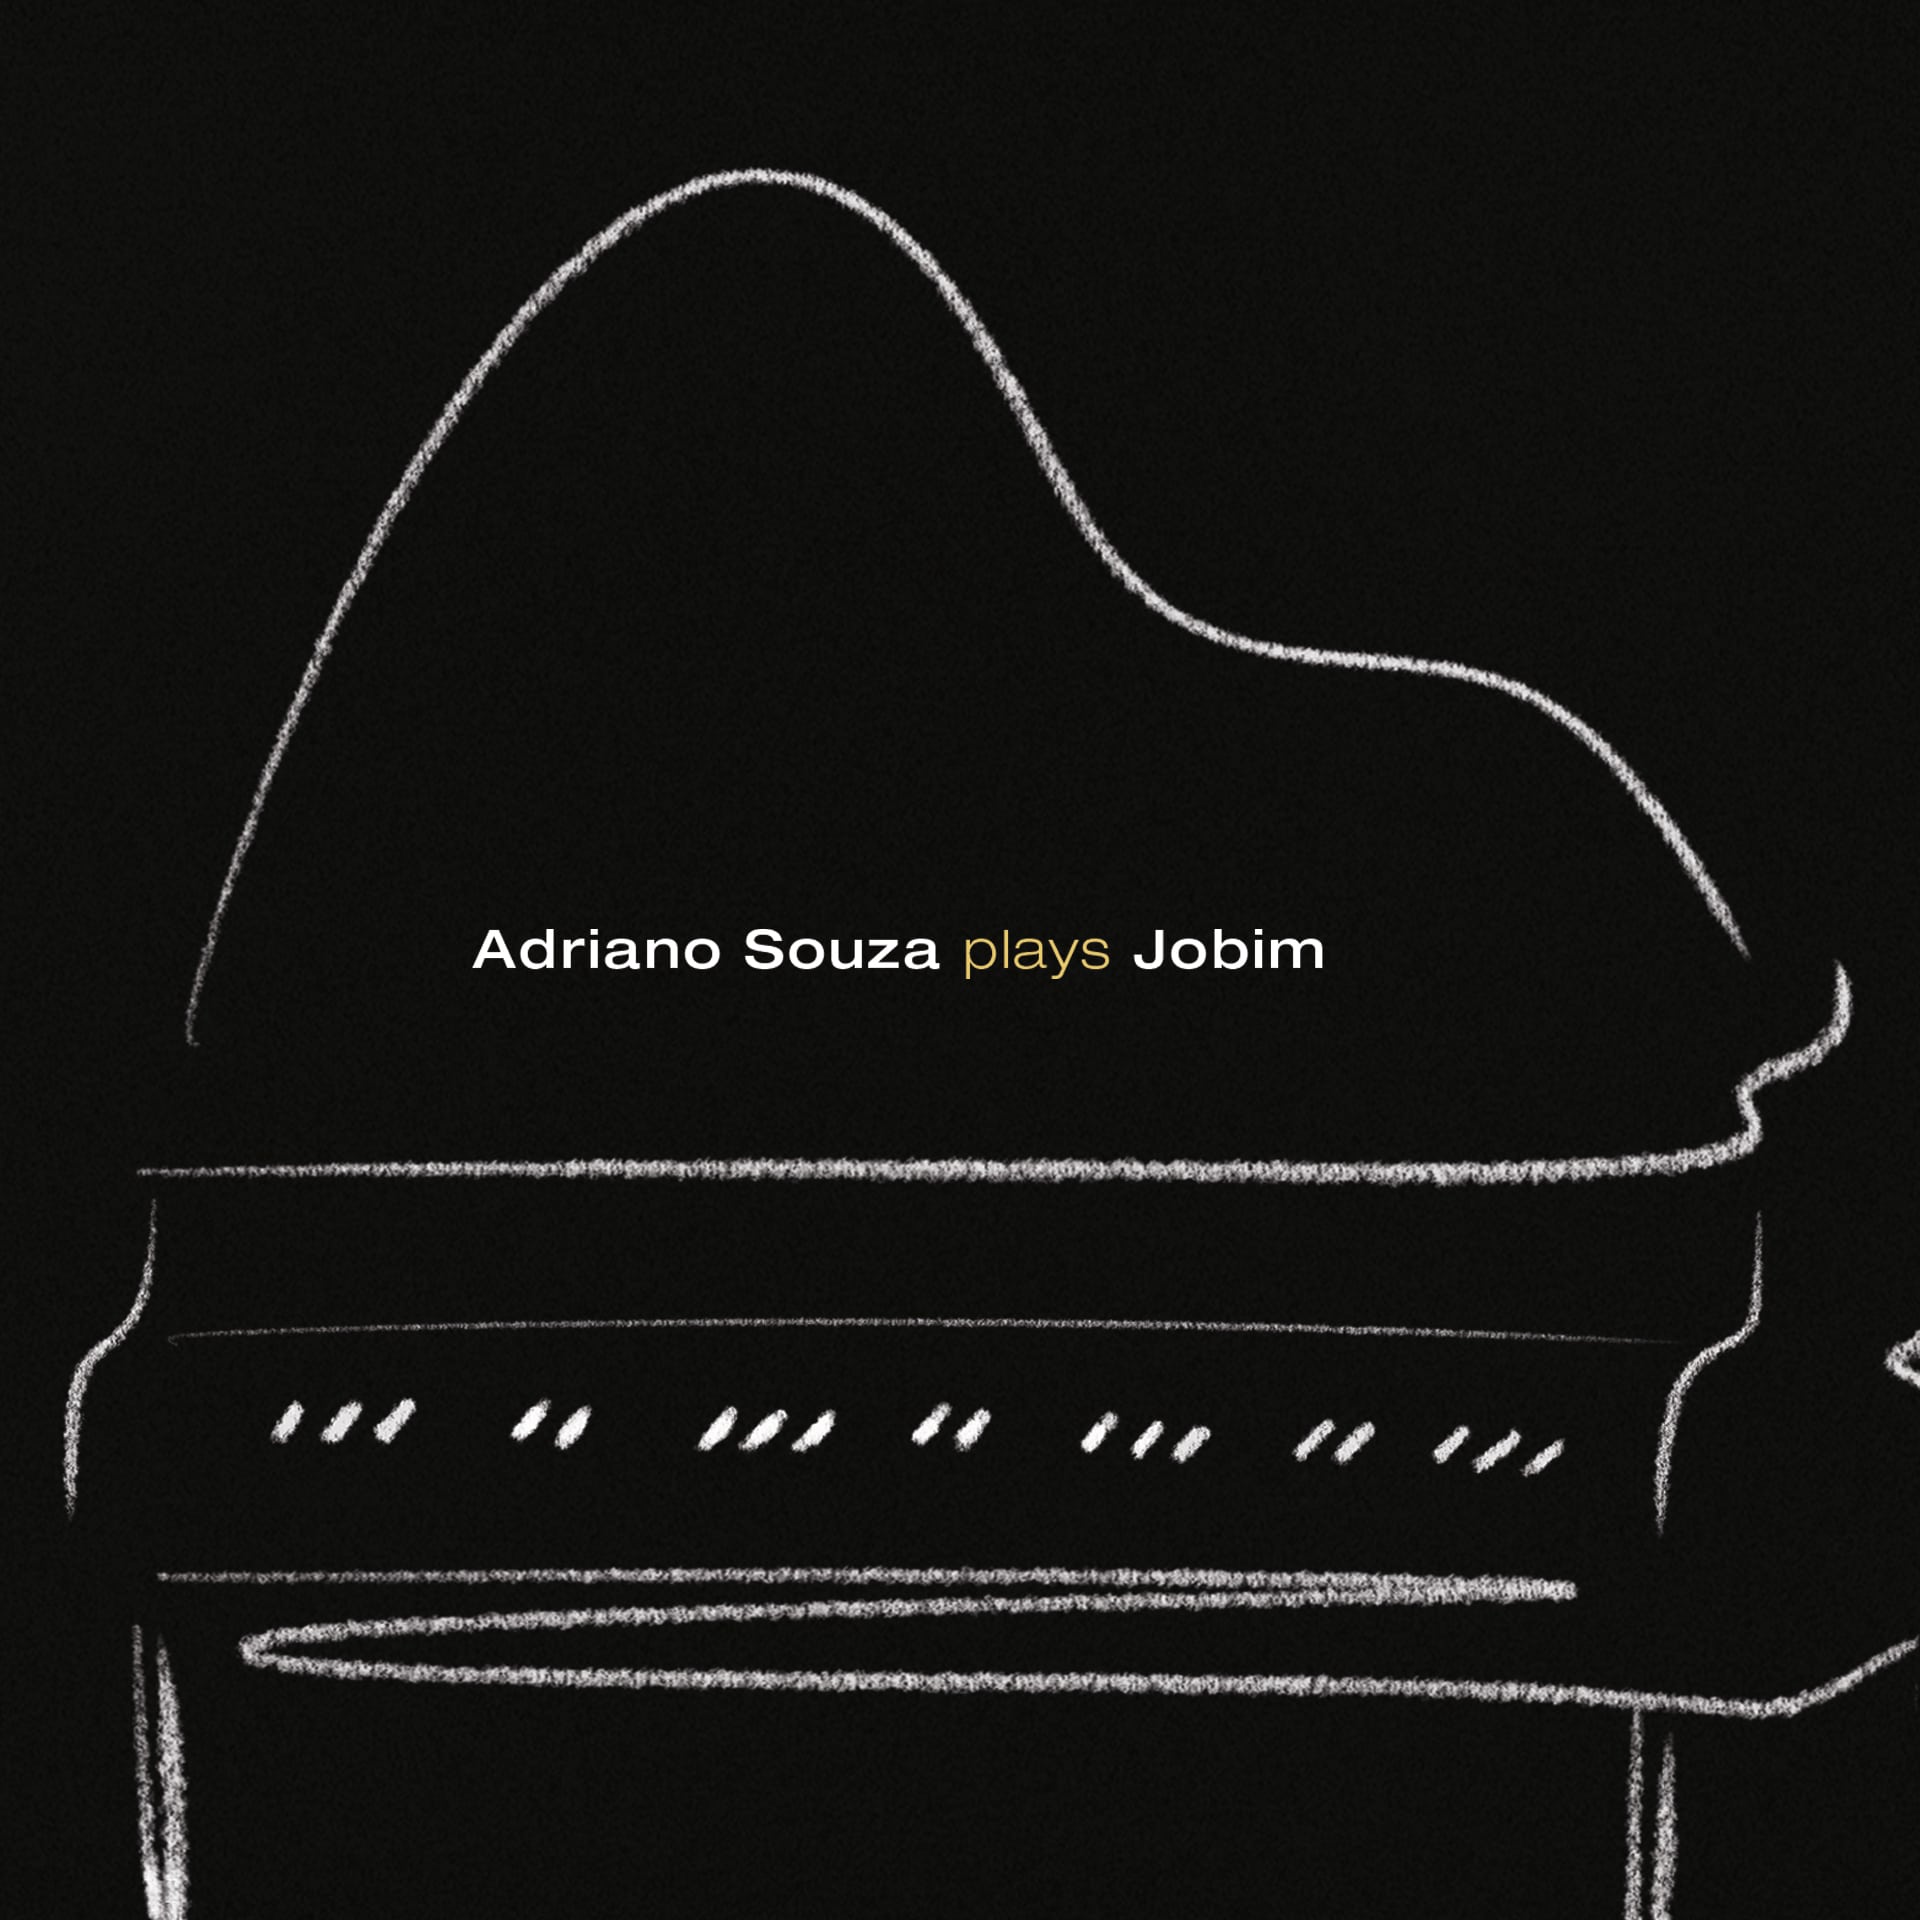 revistaprosaversoearte.com - Adriano Souza lança álbum dedicado a Tom Jobim